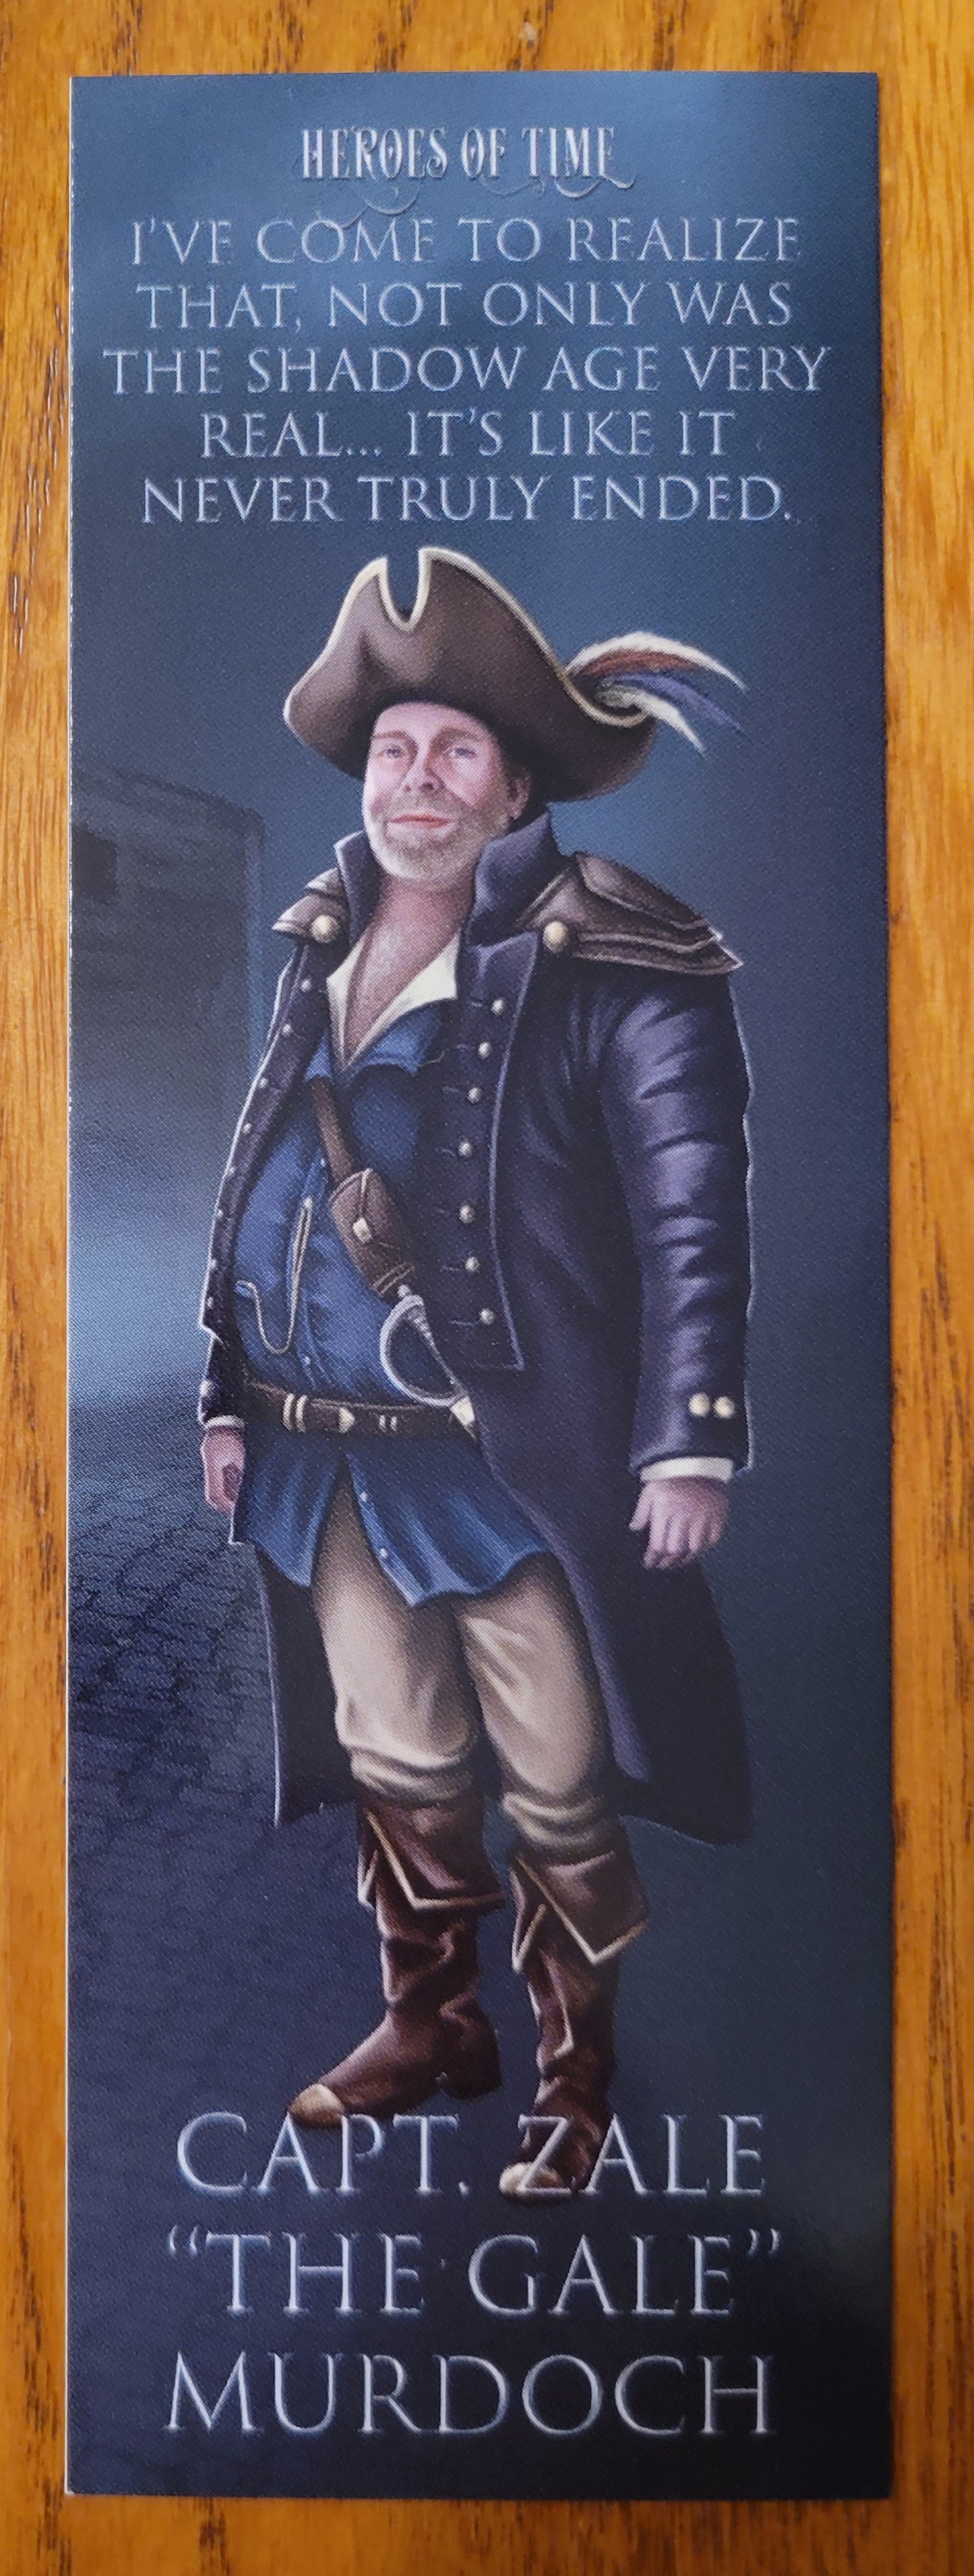 Captain Zale "the Gale" Murdoch Bookmark